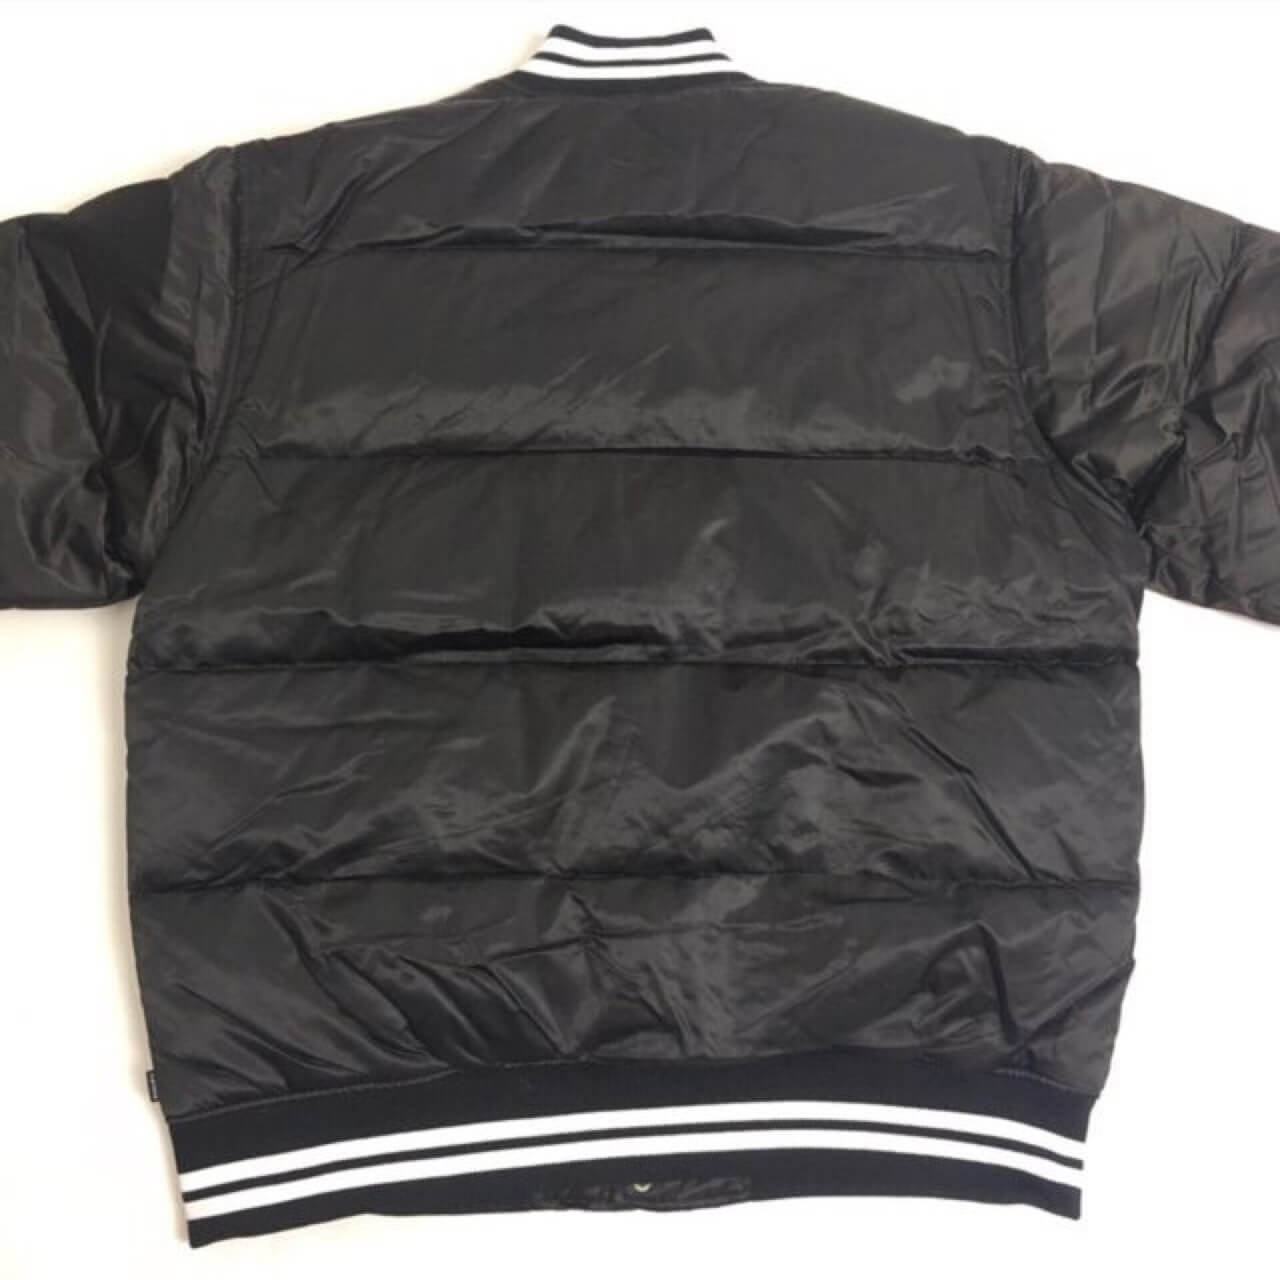 Supreme Yankees Black Leather Jacket - Maker of Jacket